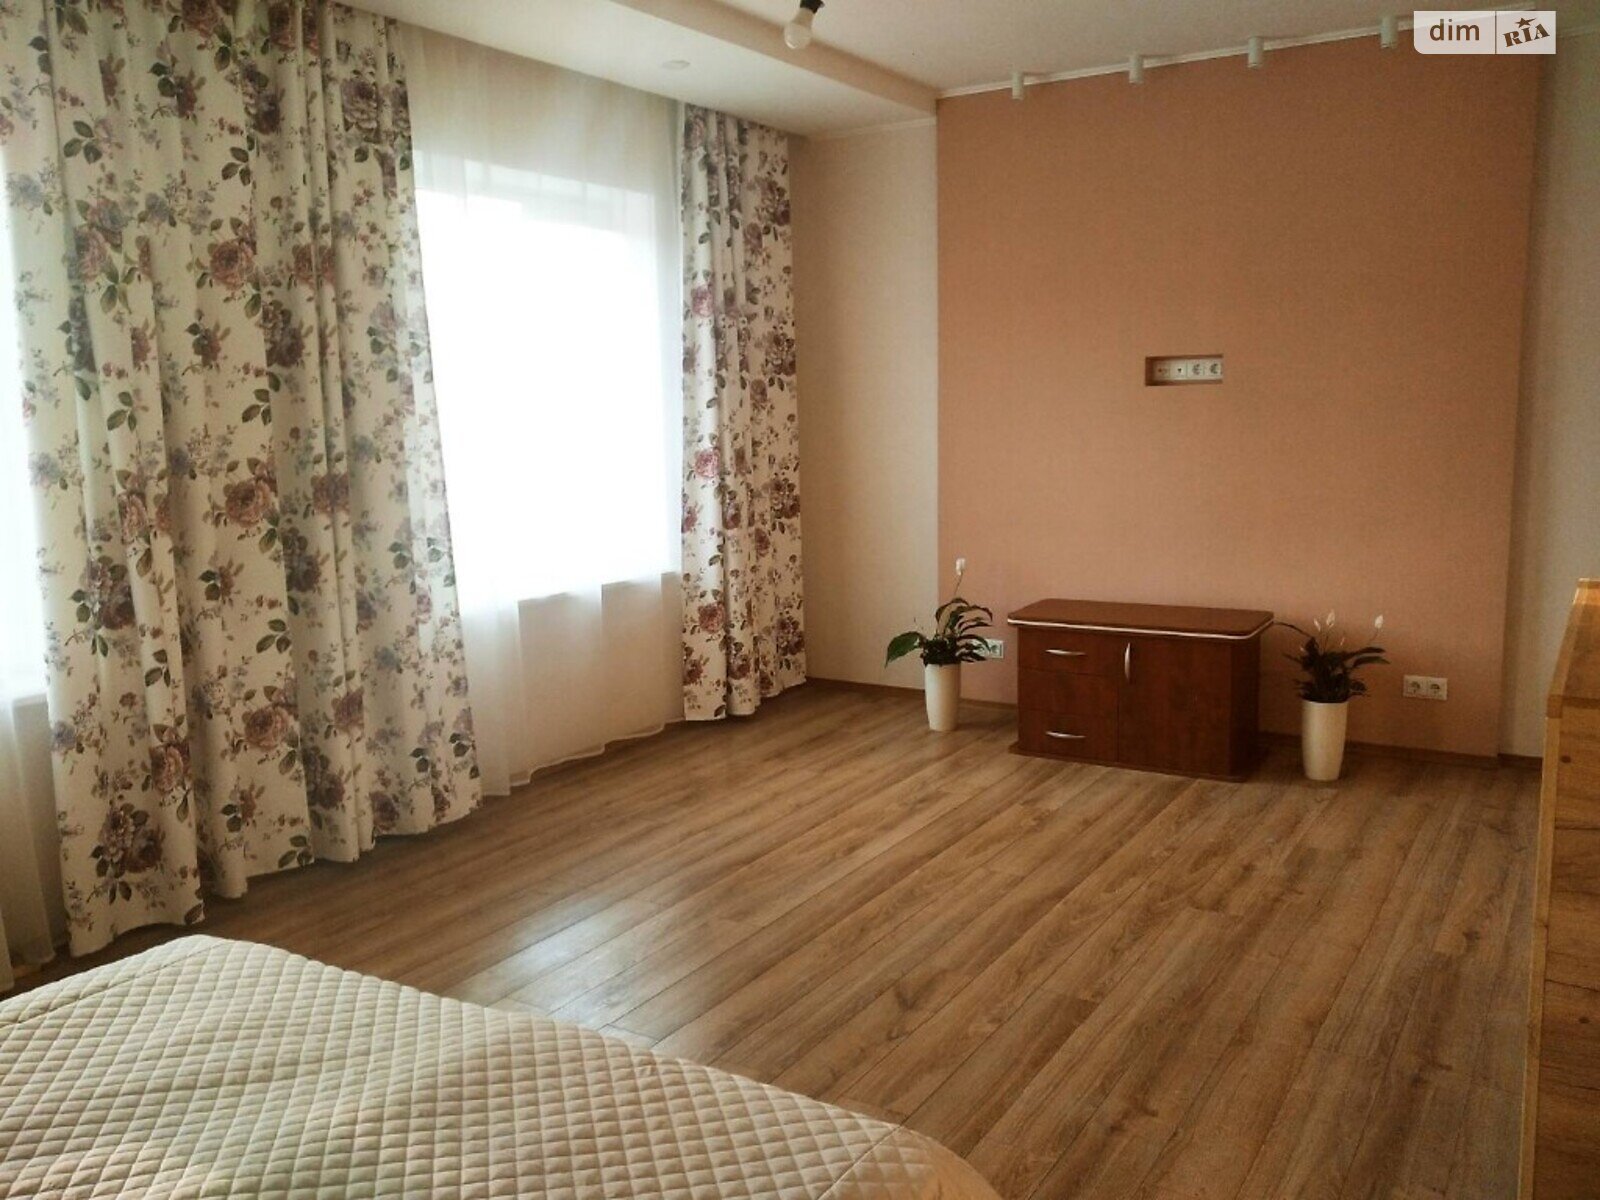 Продажа части дома в Гостомеле, улица Патриотов, 3 комнаты фото 1